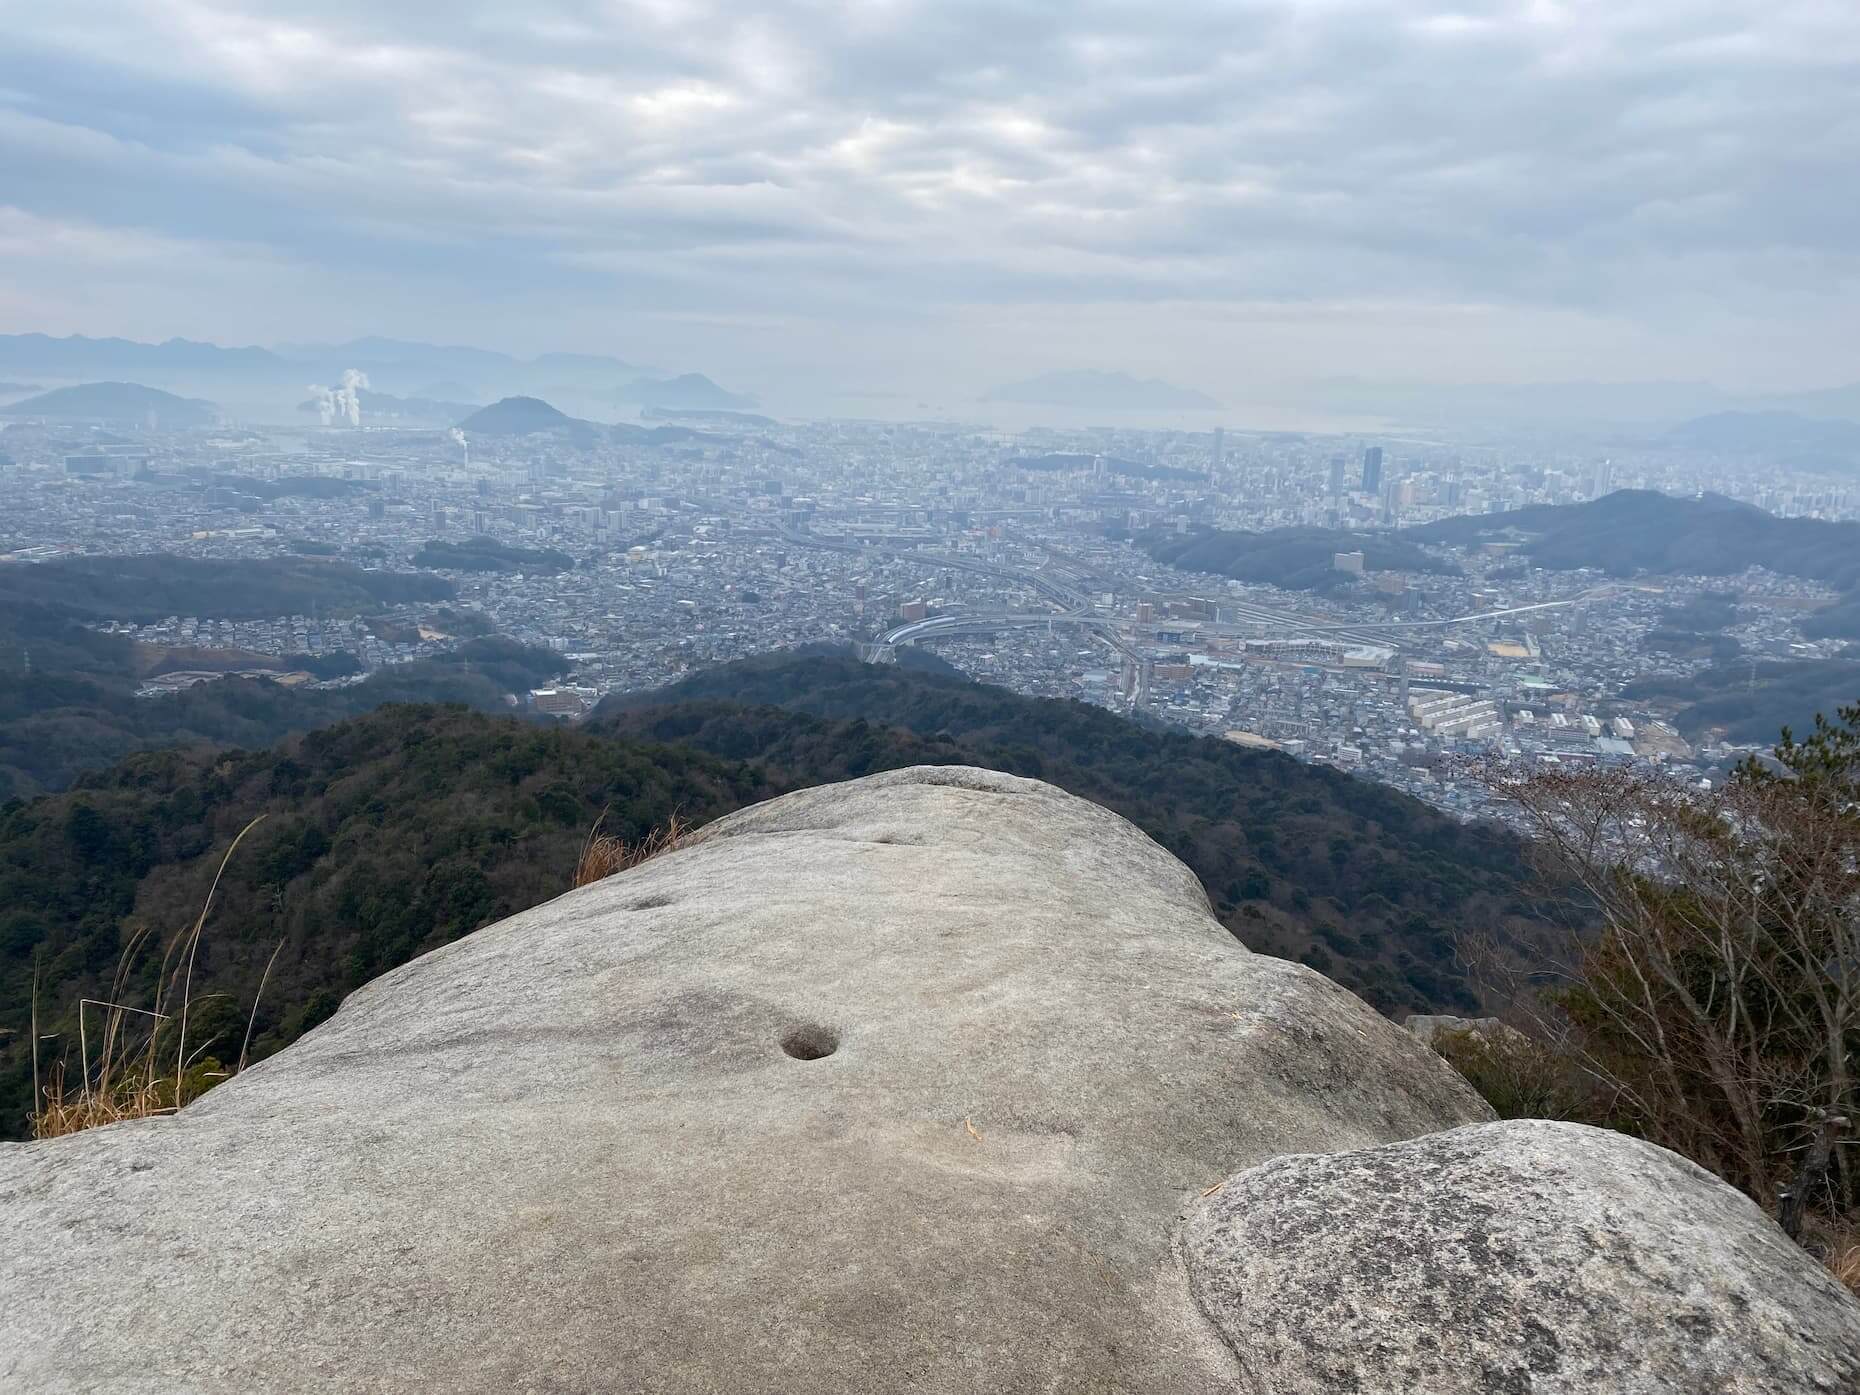 岩屋観音岩峰からの眺望。広島市の東部市街地と広島湾が一望できる